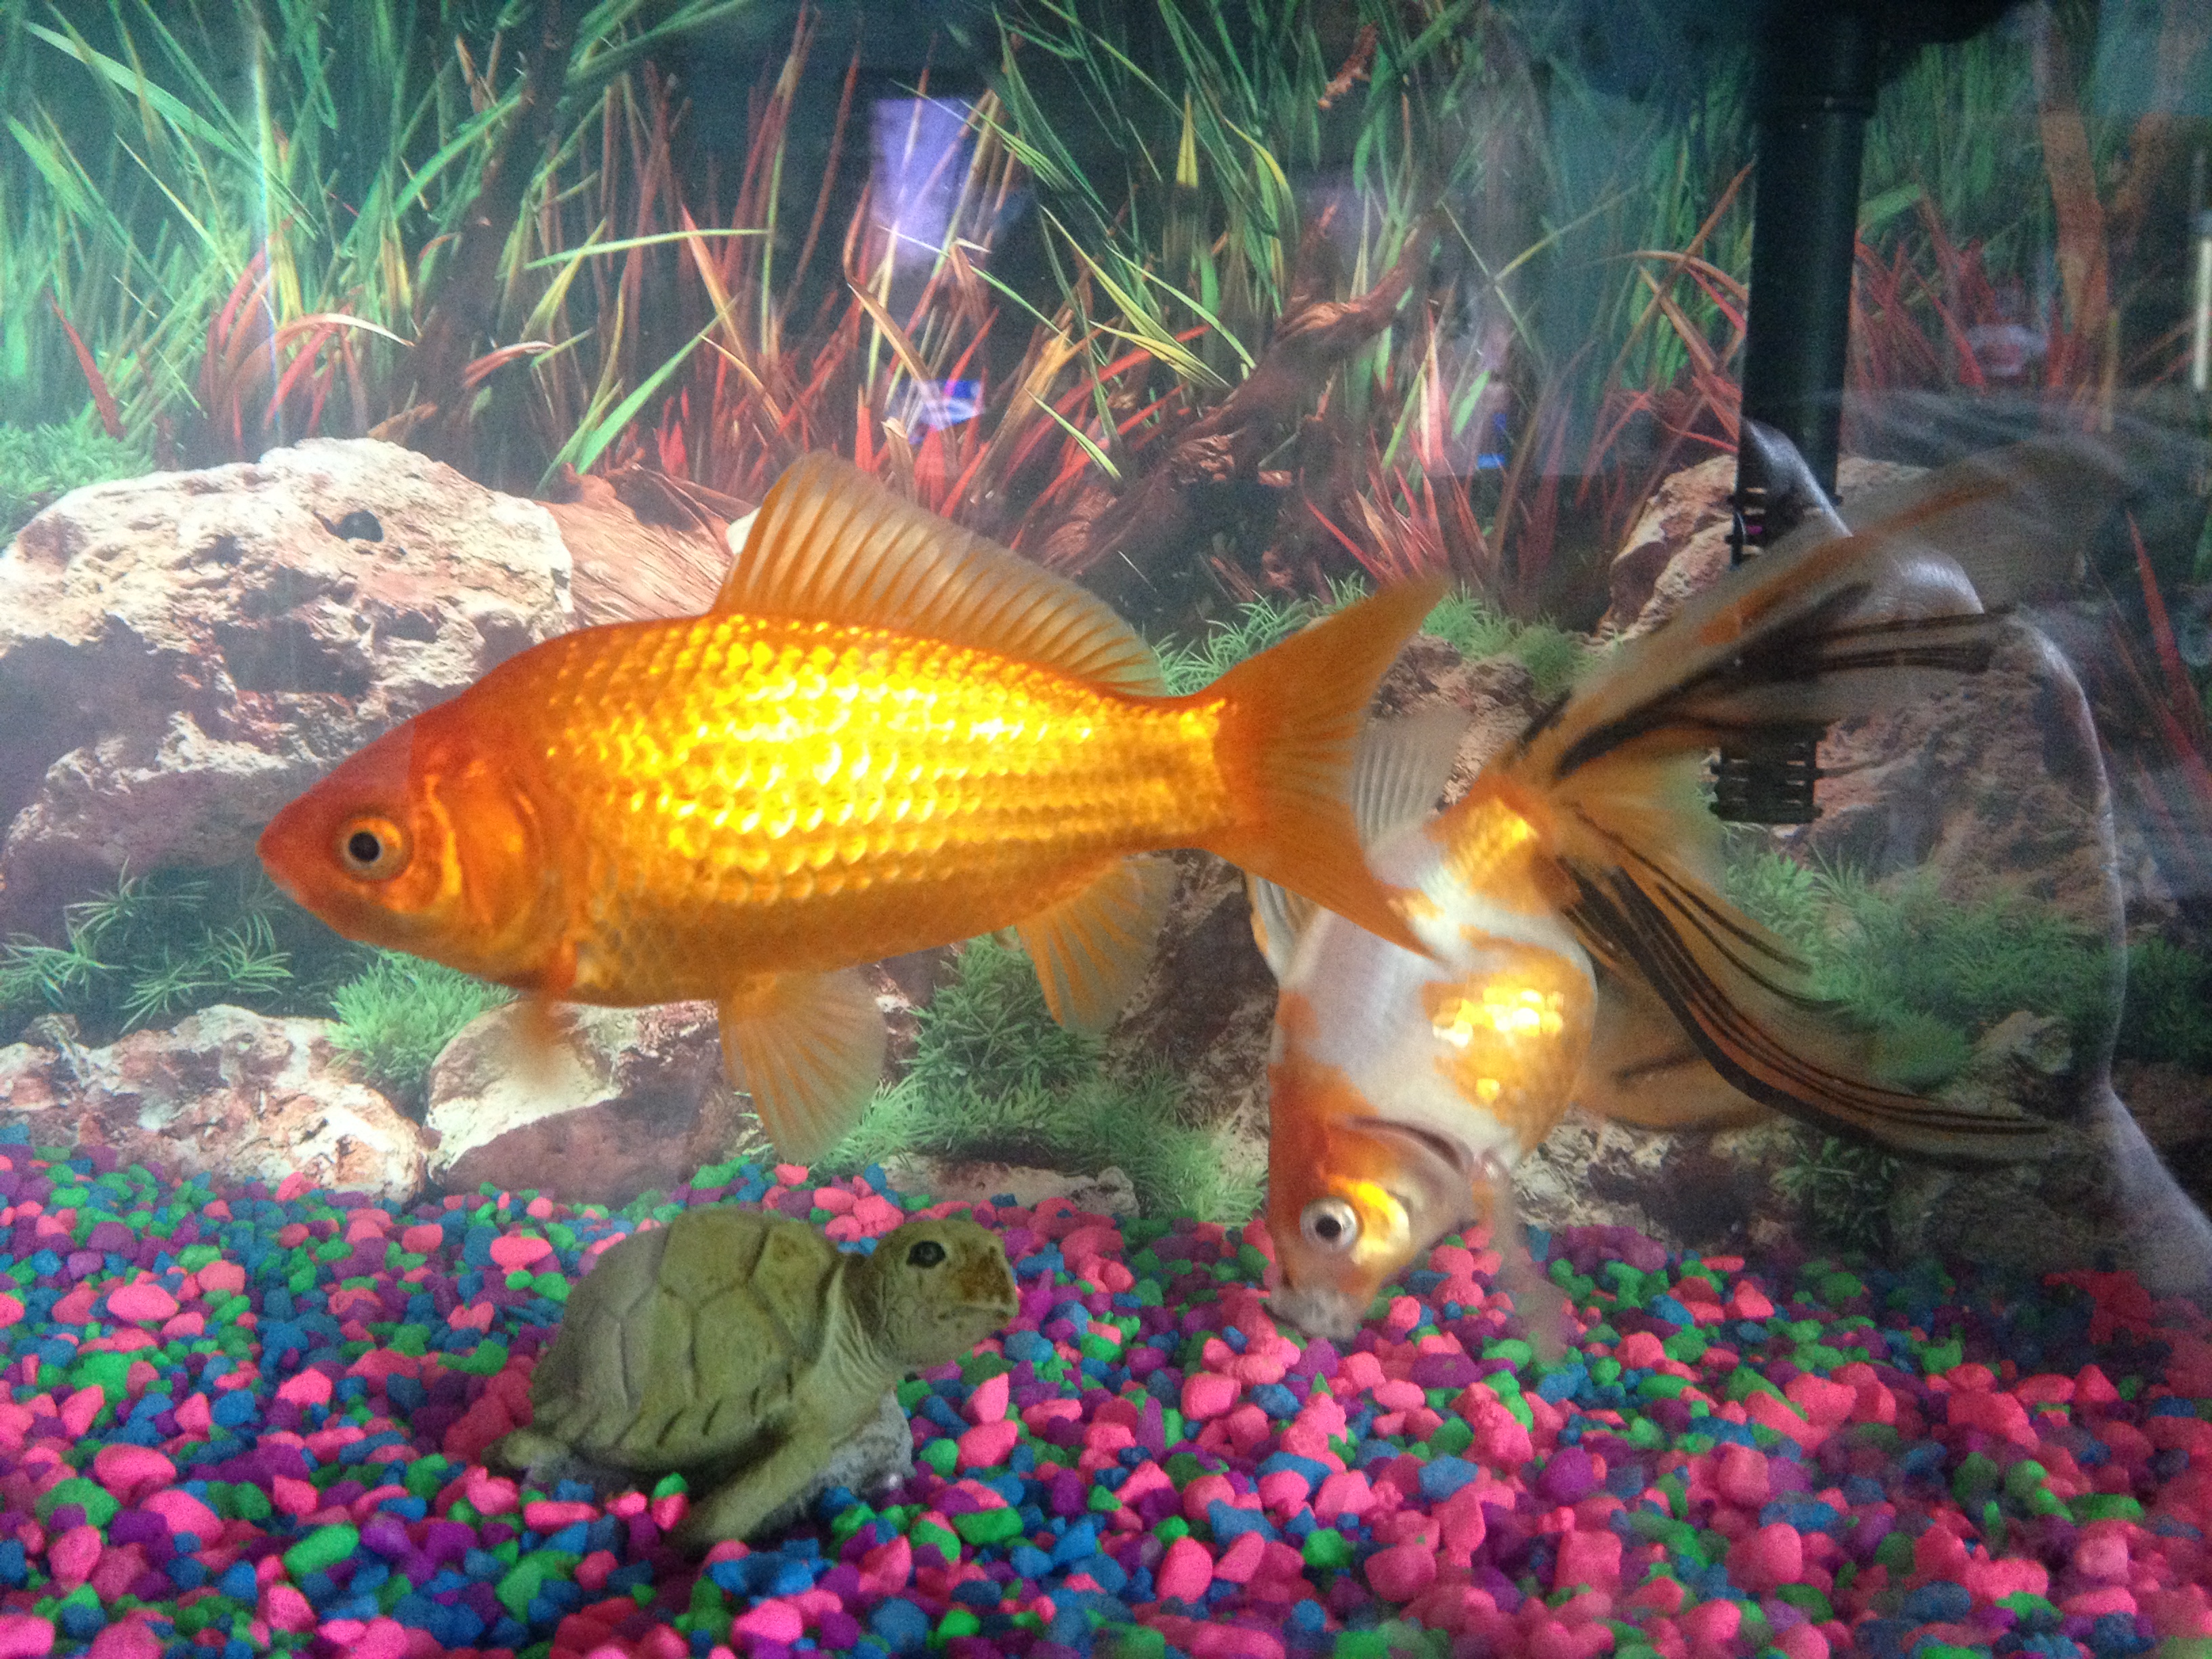 Our fish - Fishy (orange) and Wishy (white/orange)